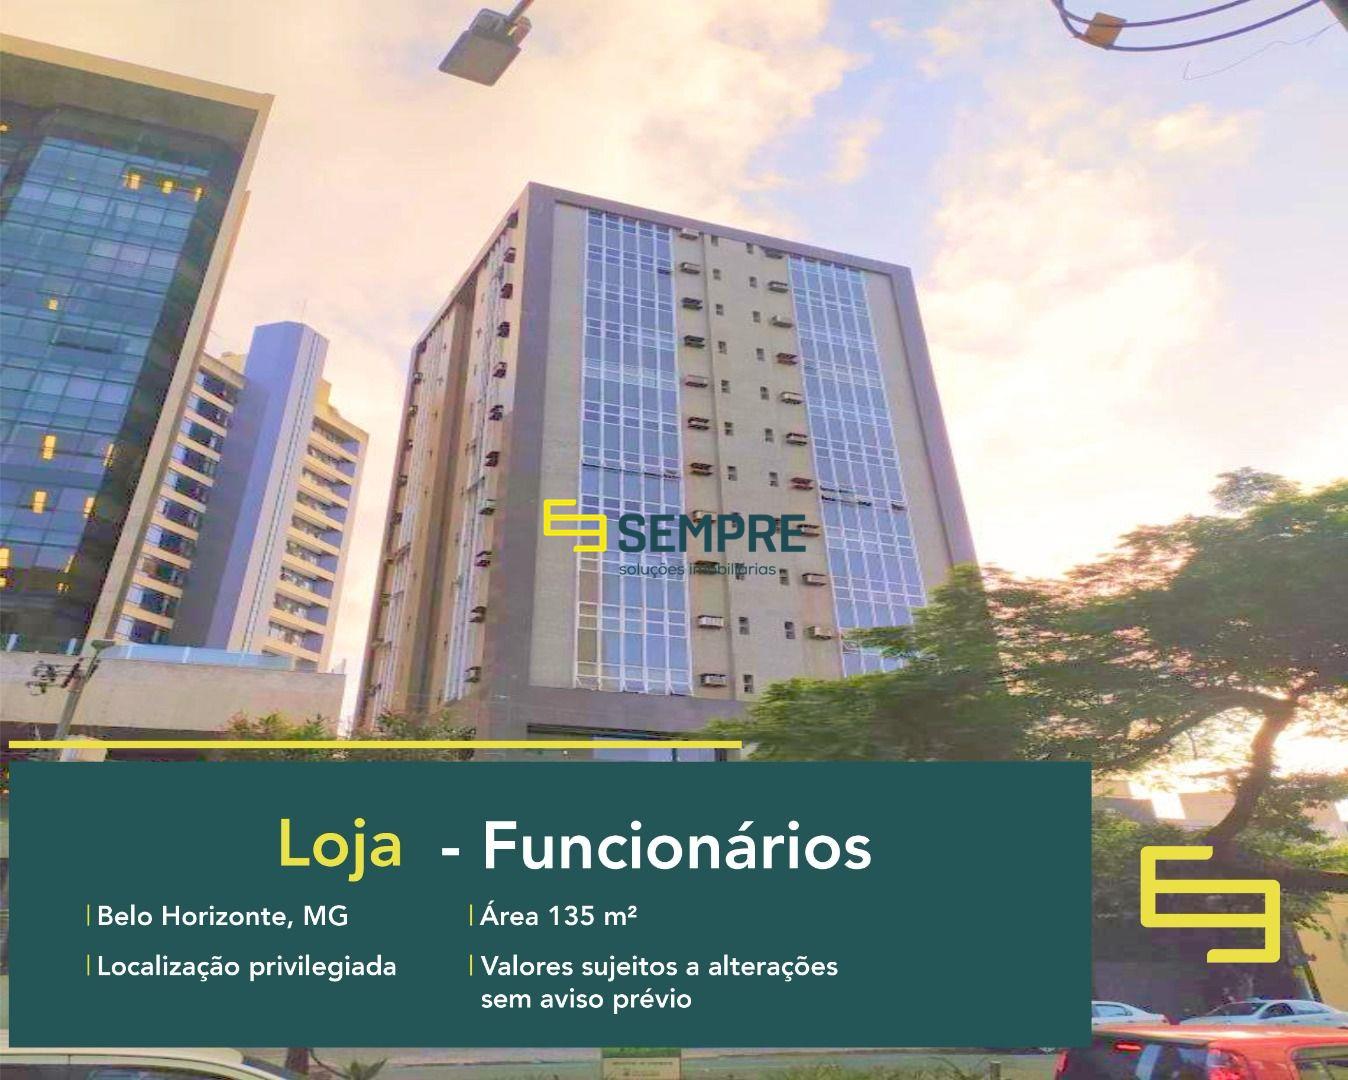 Loja para alugar no bairro Funcionários em Belo Horizonte, excelente localização. O estabelecimento comercial conta com área de 135 m².